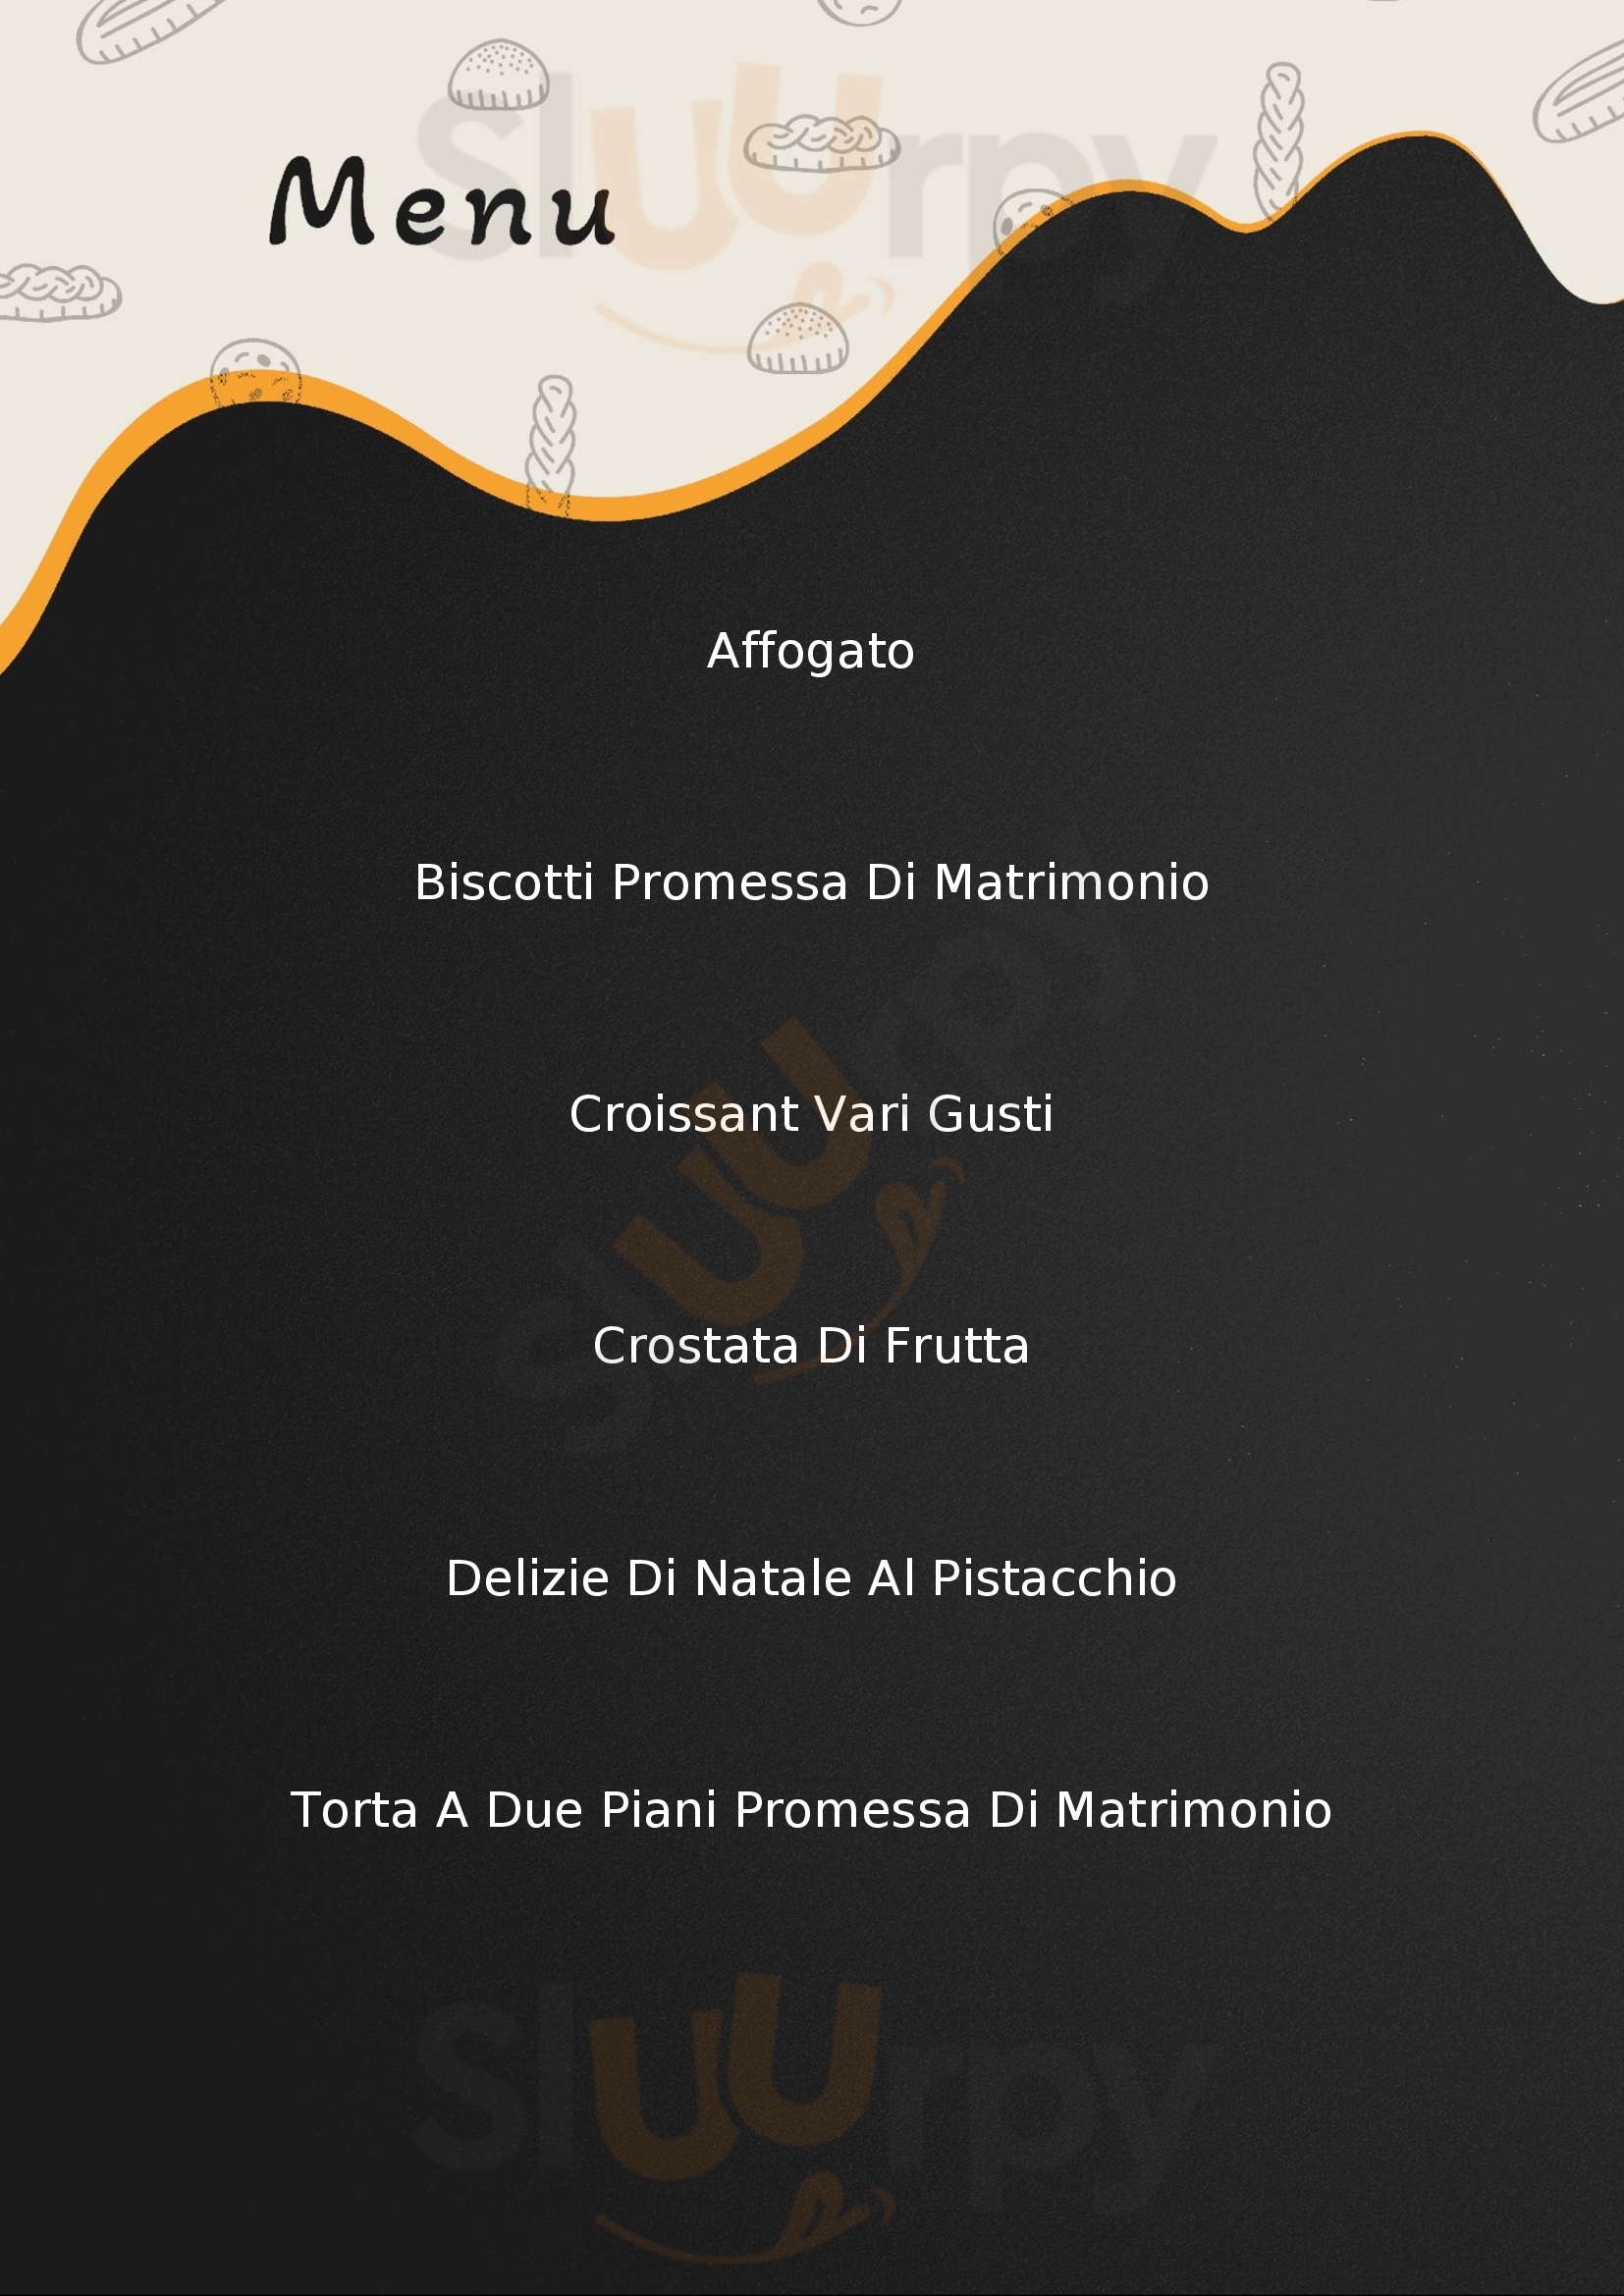 Les Gourmets Canosa di Puglia menù 1 pagina